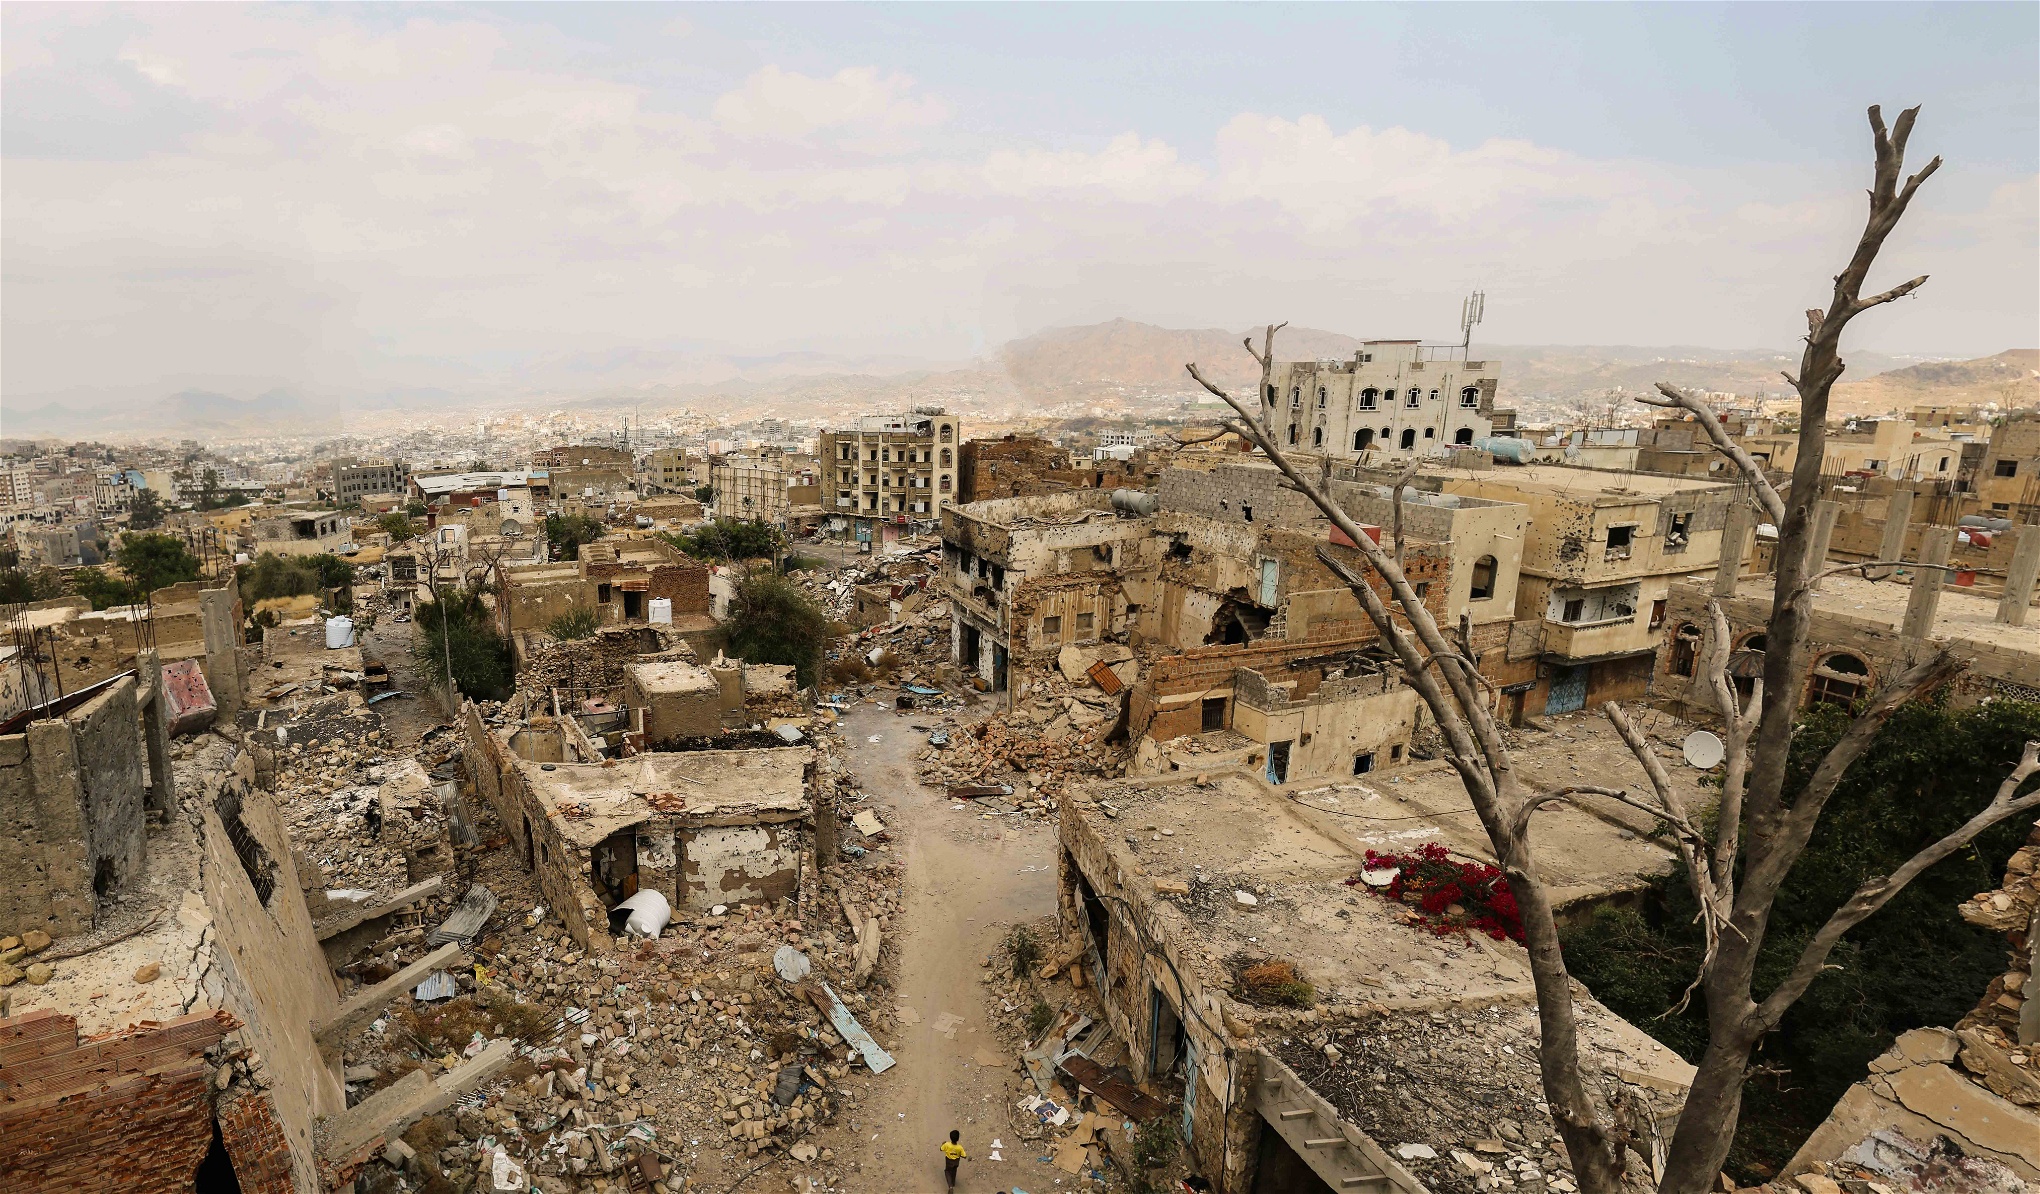 Ett sönderbombat land. Att huthirebellerna i dag försöker erövra Jemen ses av många i södra Jemen som ännu en invasion från norr.